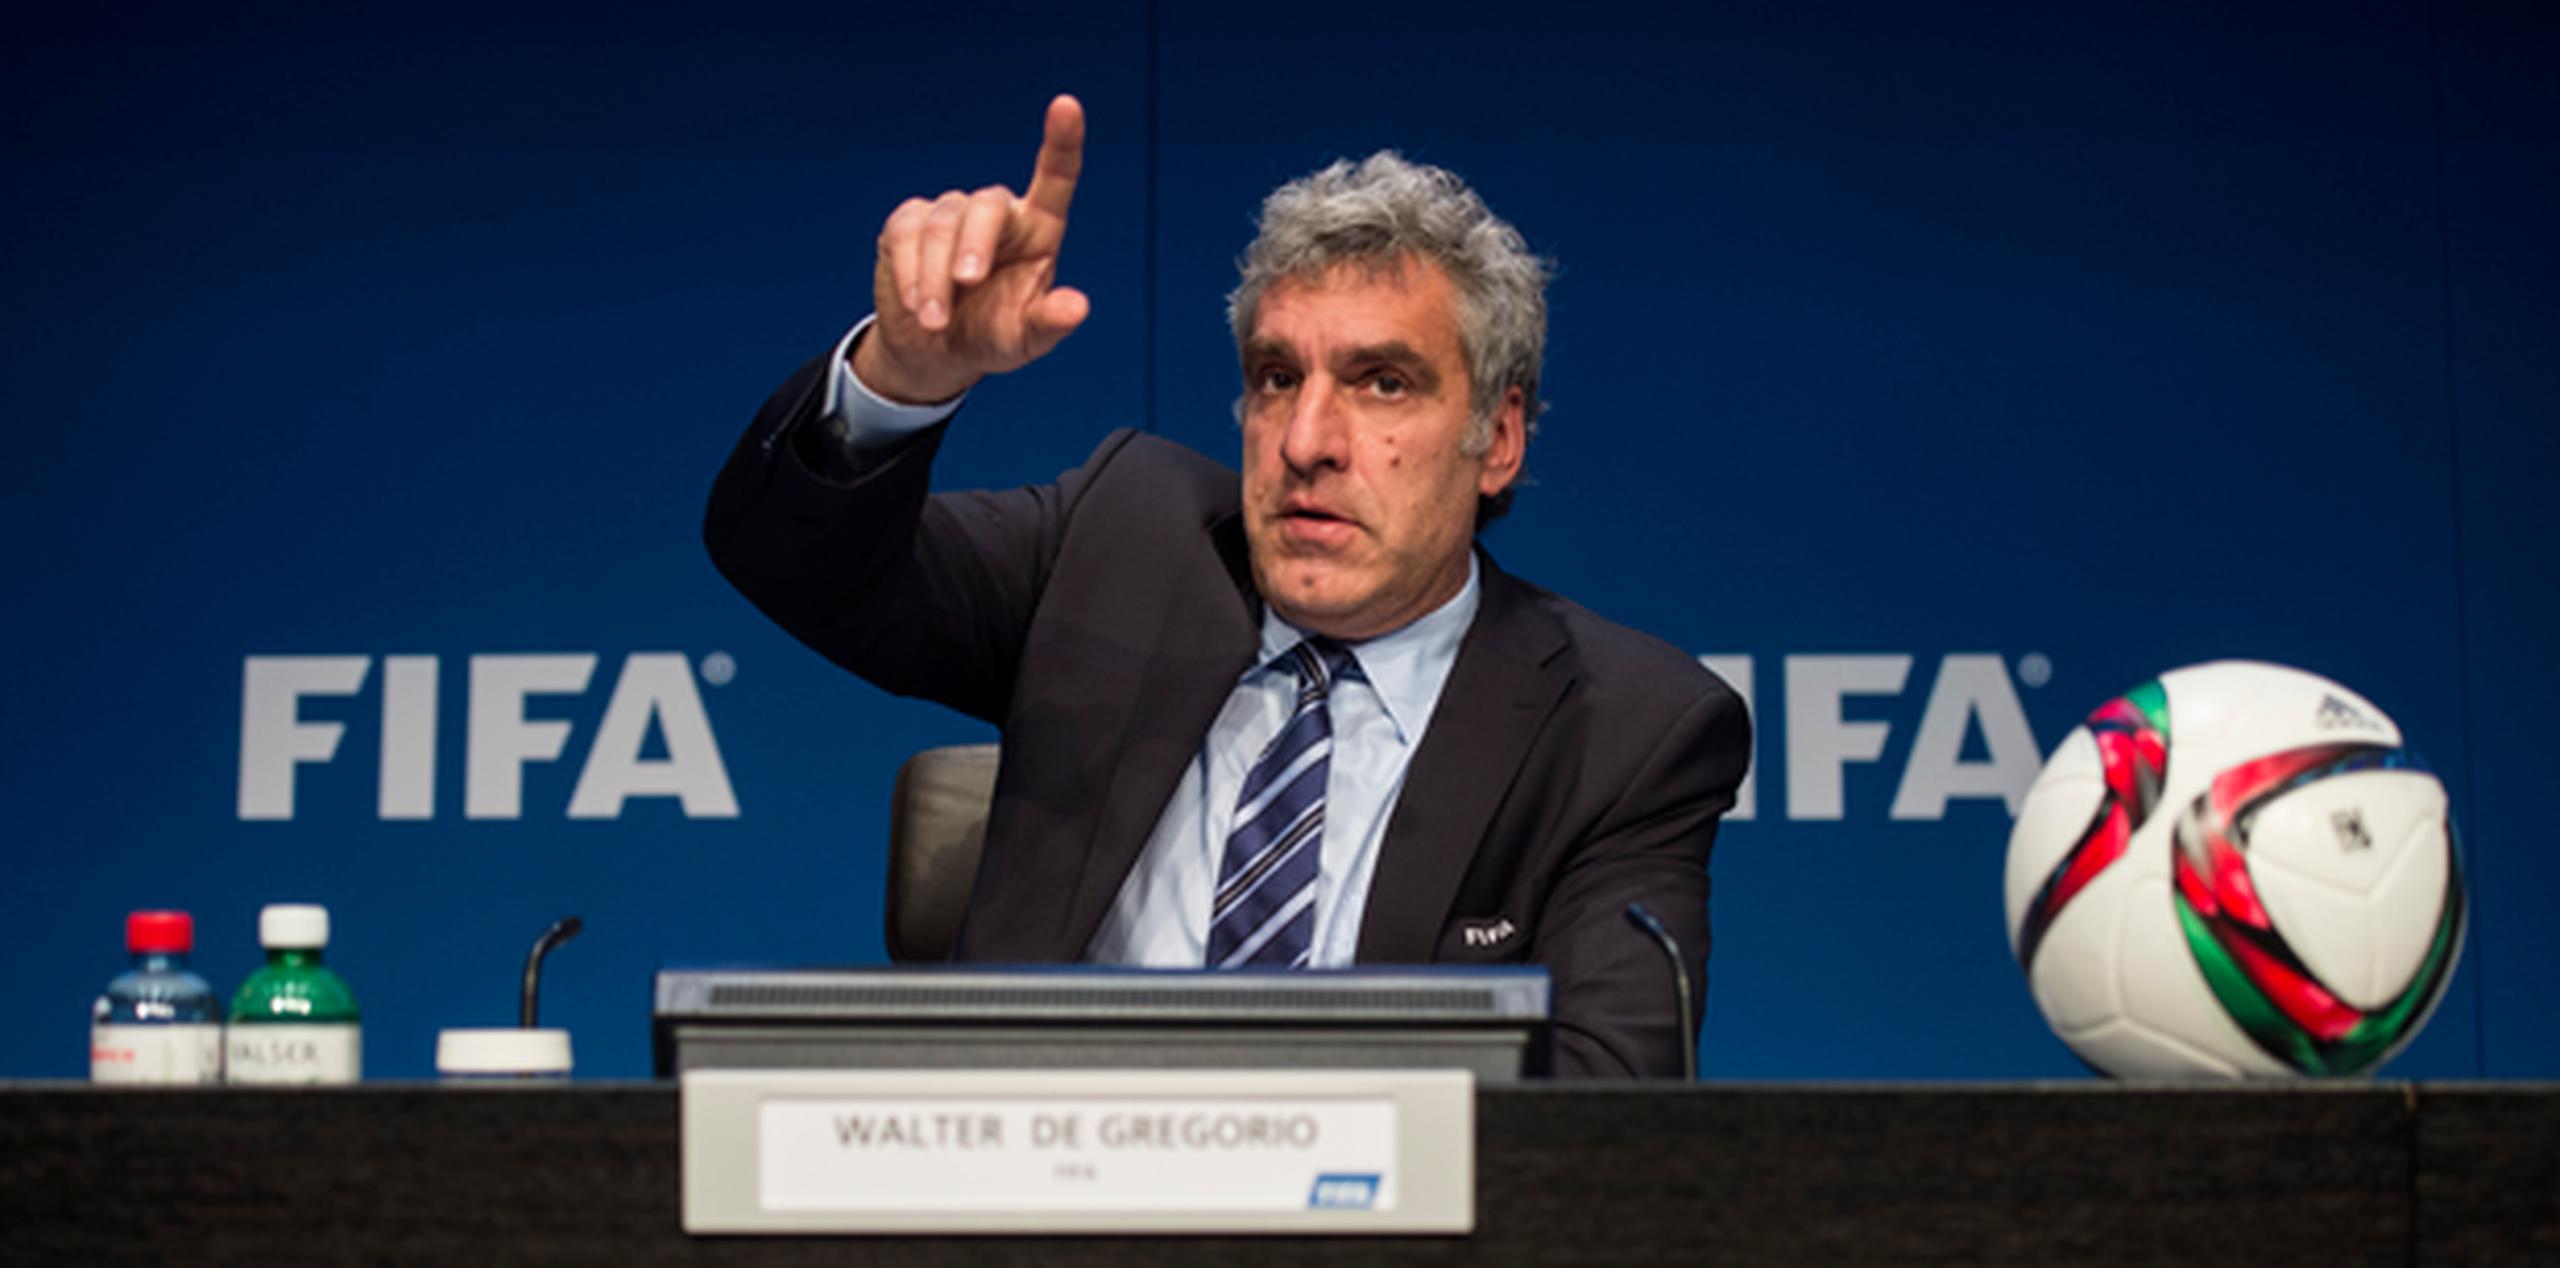 Walter De Gregorio, director de comunicaciones de la FIFA, realizó hoy una conferencia de prensa para ofrecer detalles sobre las detenciones. (AP)